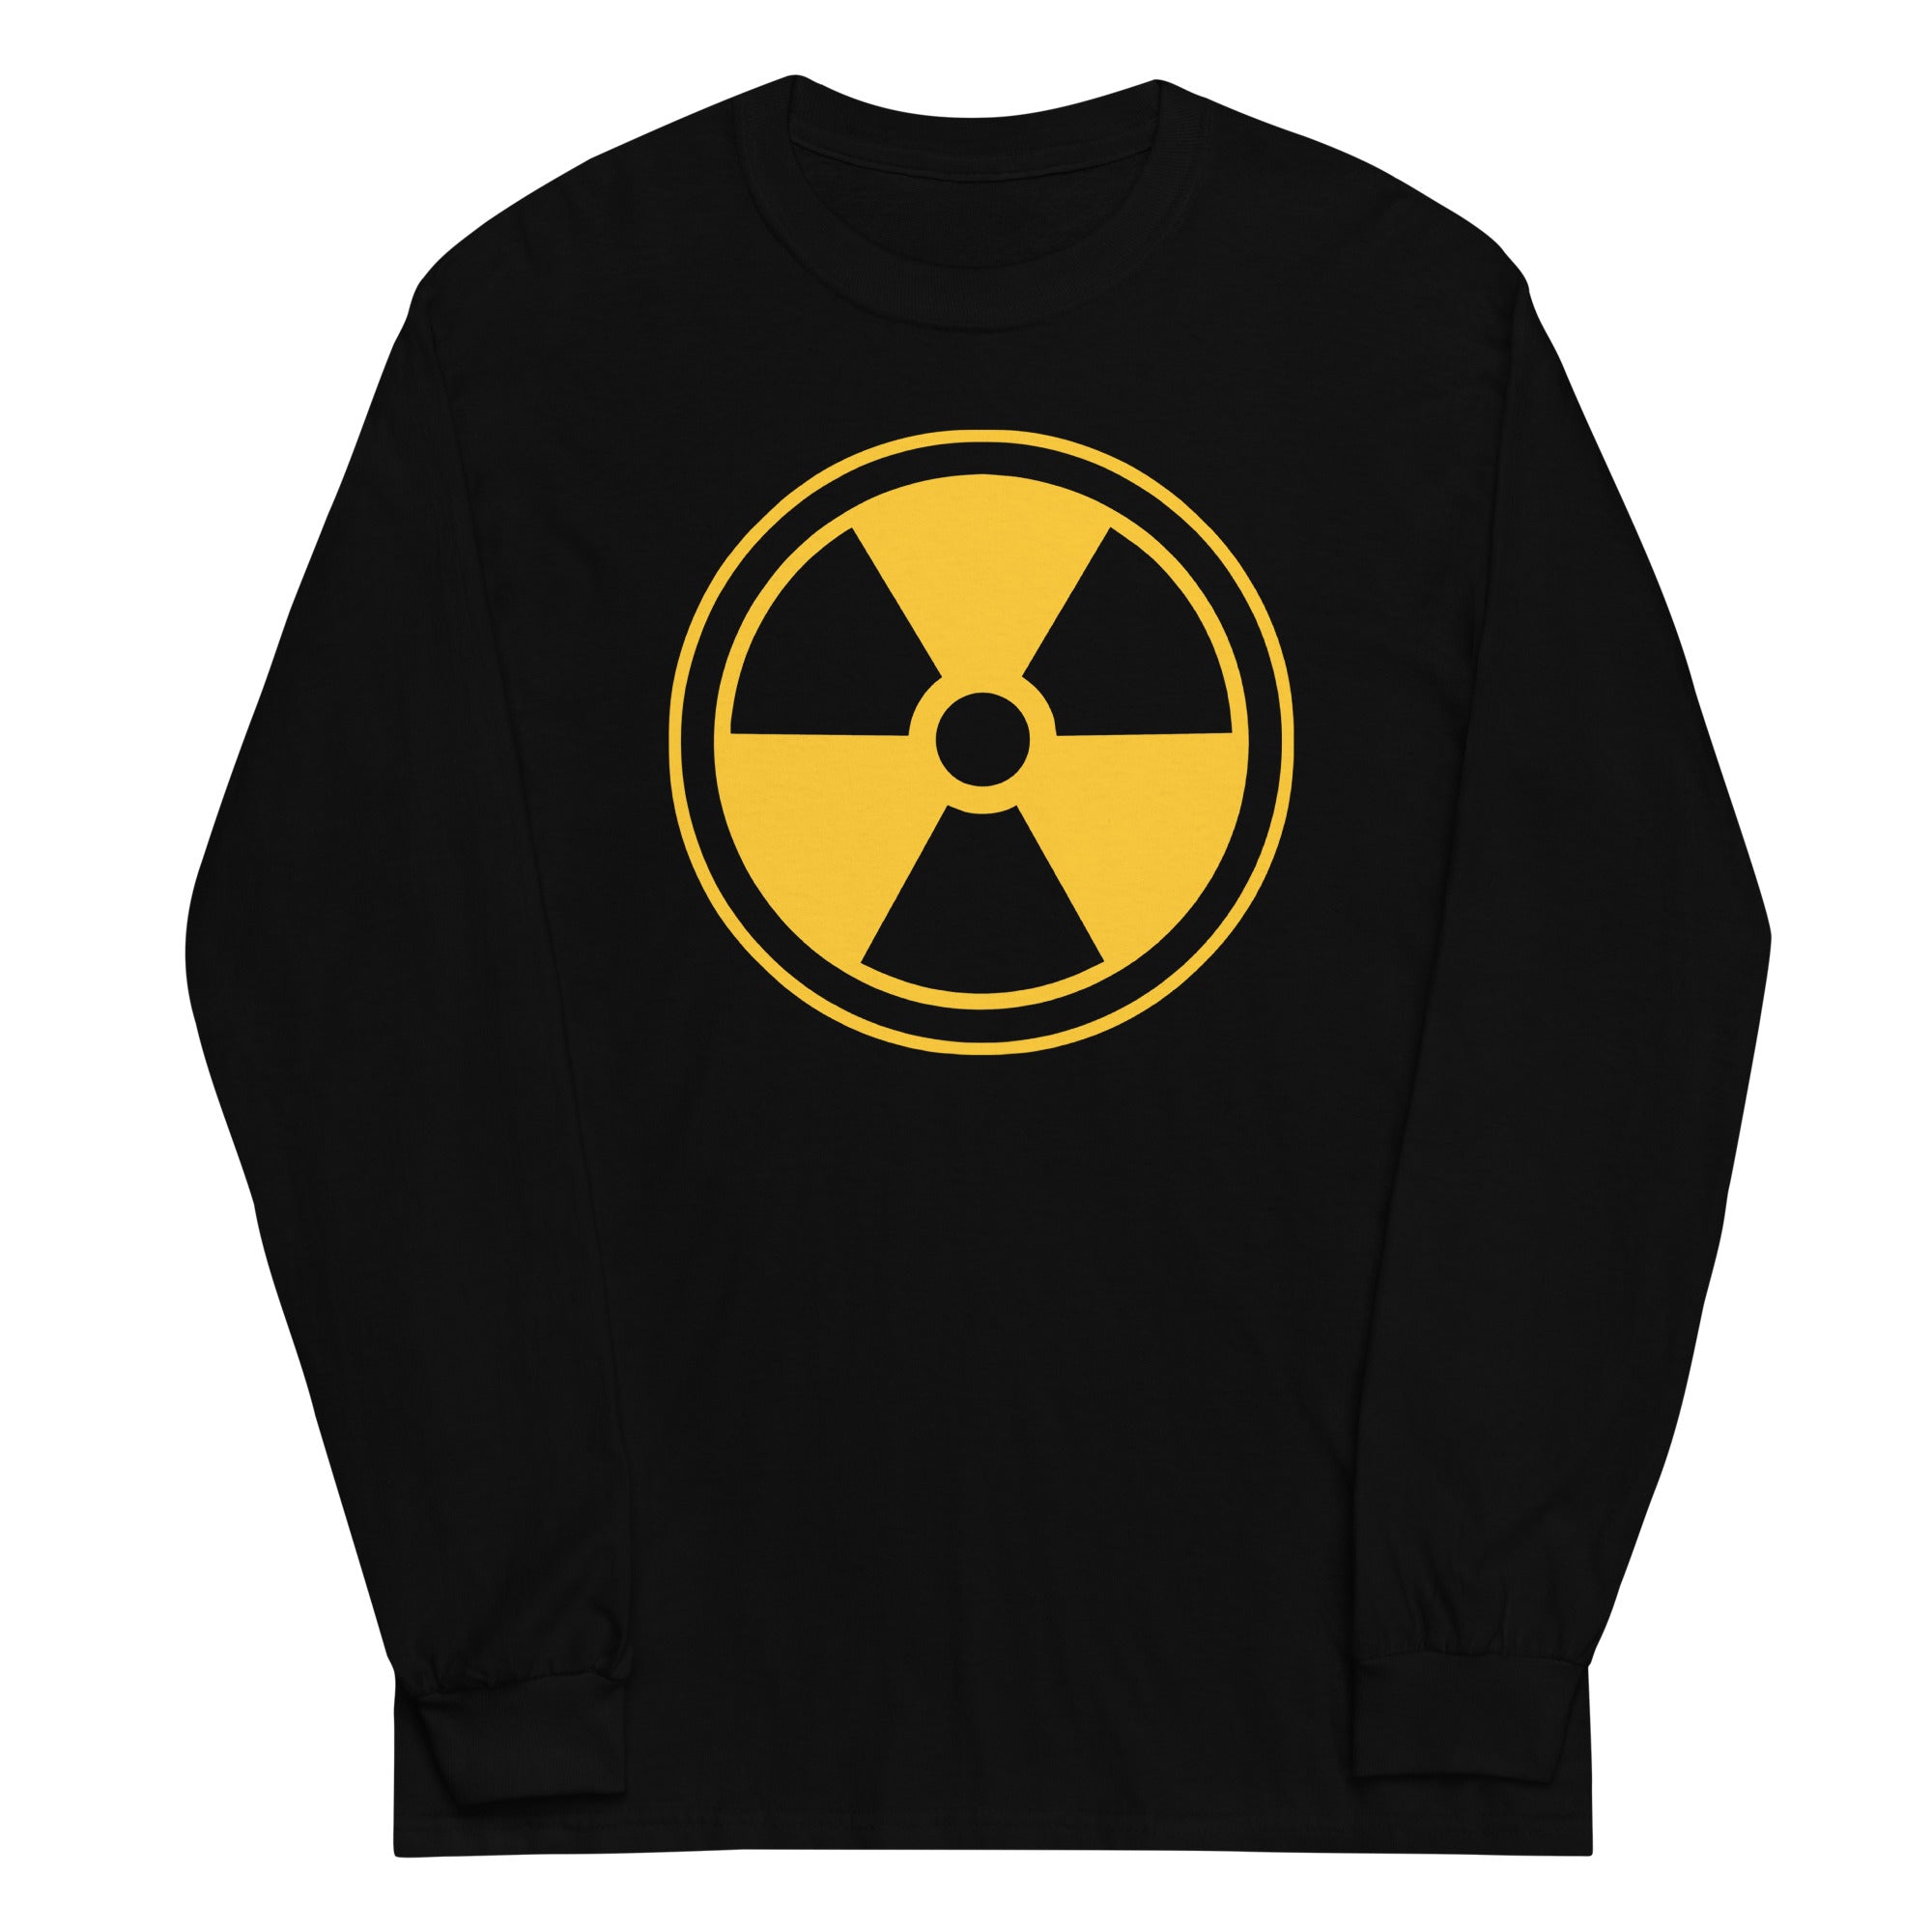 Yellow Radioactive Radiation Warning Sign Long Sleeve Shirt